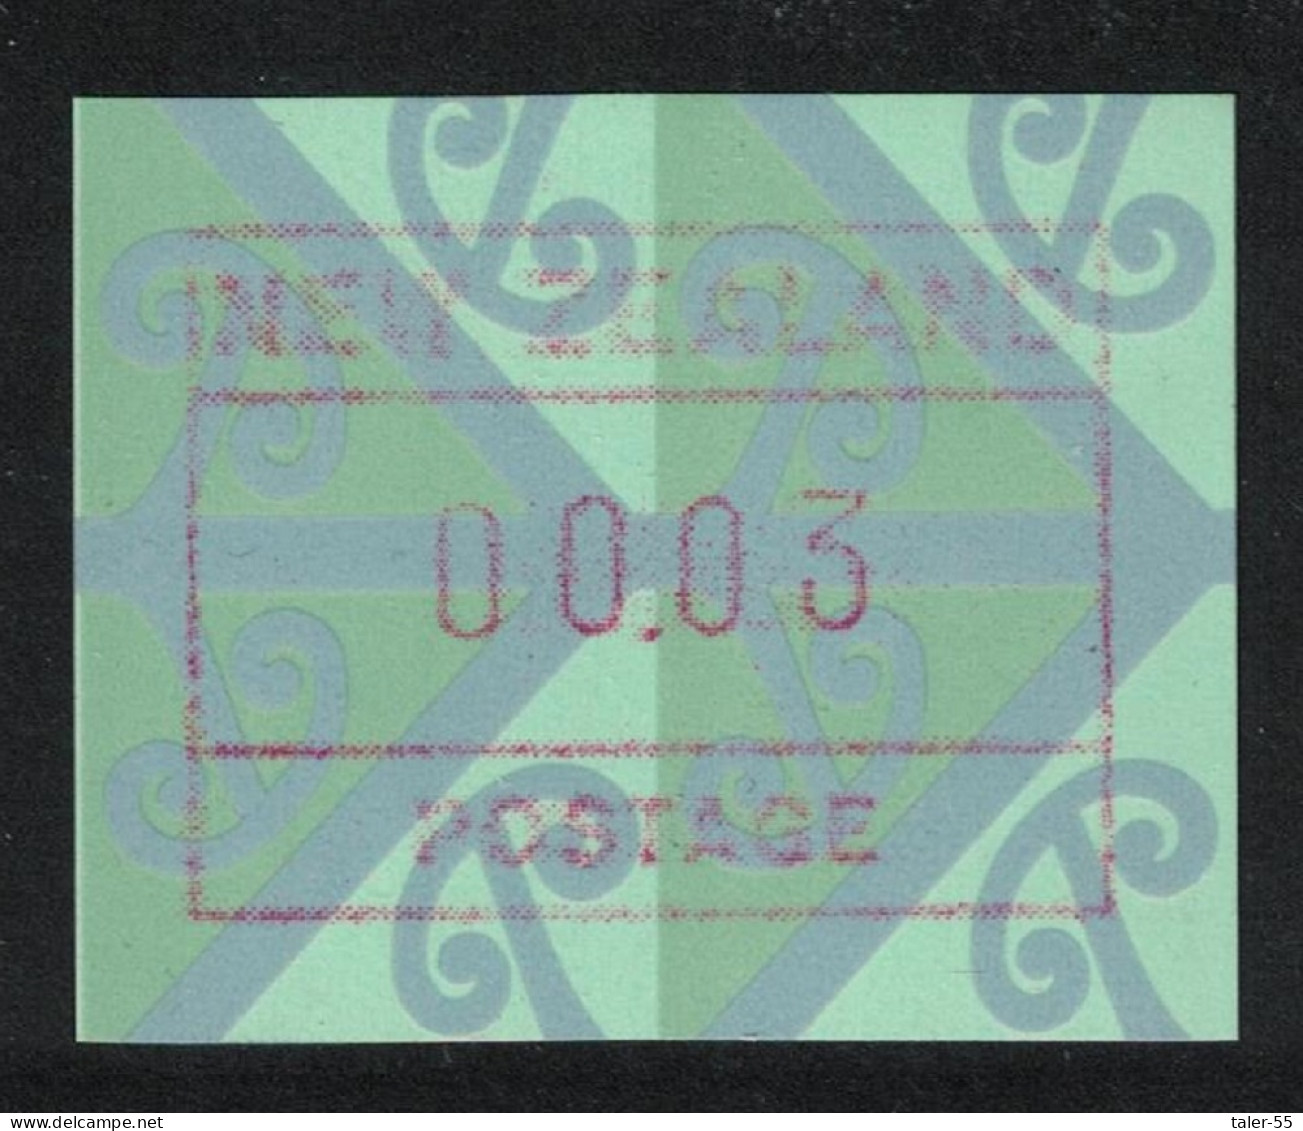 New Zealand ATM Label 1996 MNH MI#7 - Neufs